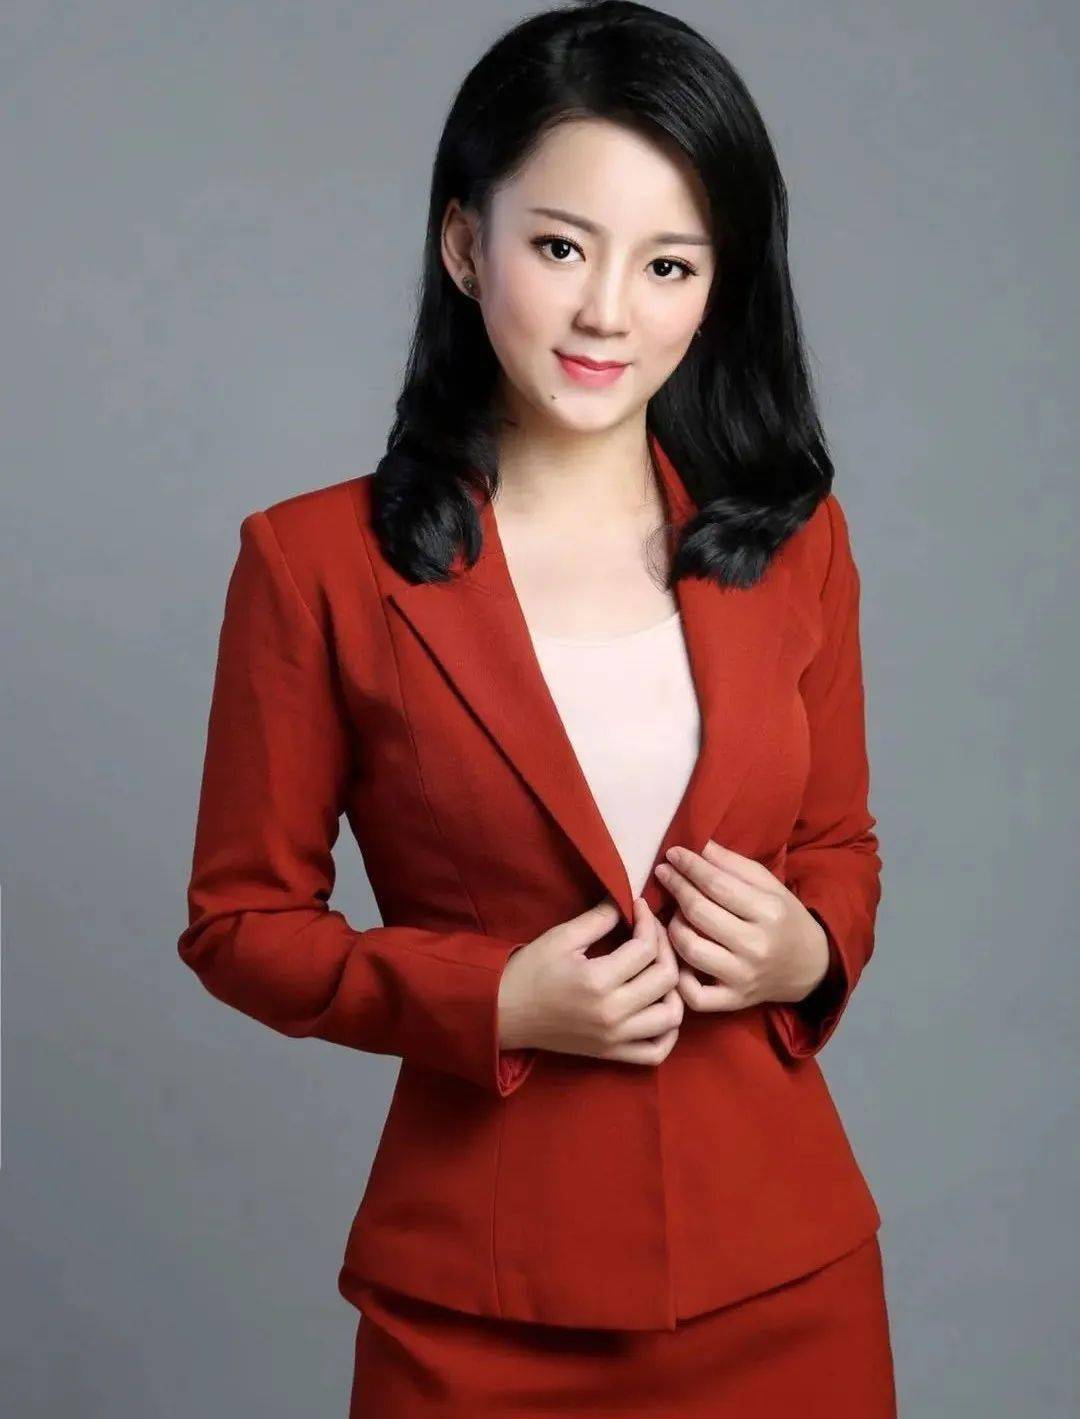 2020年11月8日，刘颢玥作为央视中文国际频道的主持人首次亮相《中国新闻》节目，对于一个新人来说她的表现也获得了台里的认可。